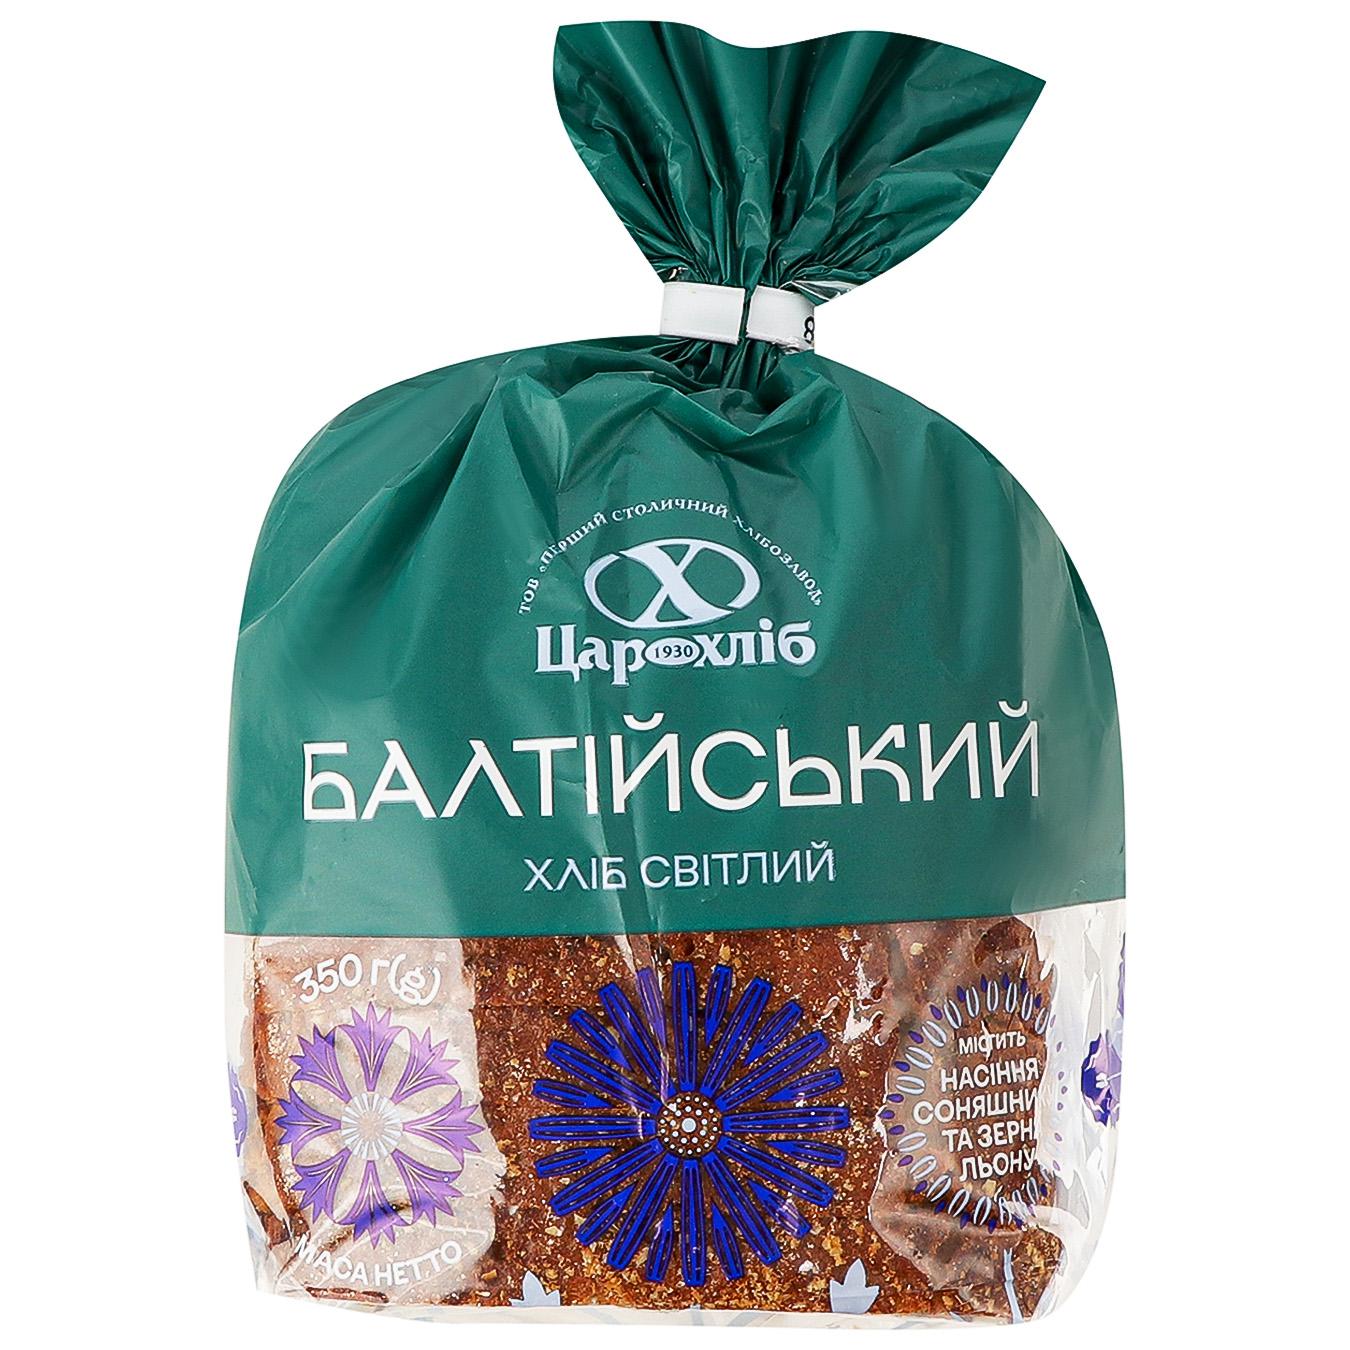 Tsarkhlib Baltiyskiy light half-cut bread 350g